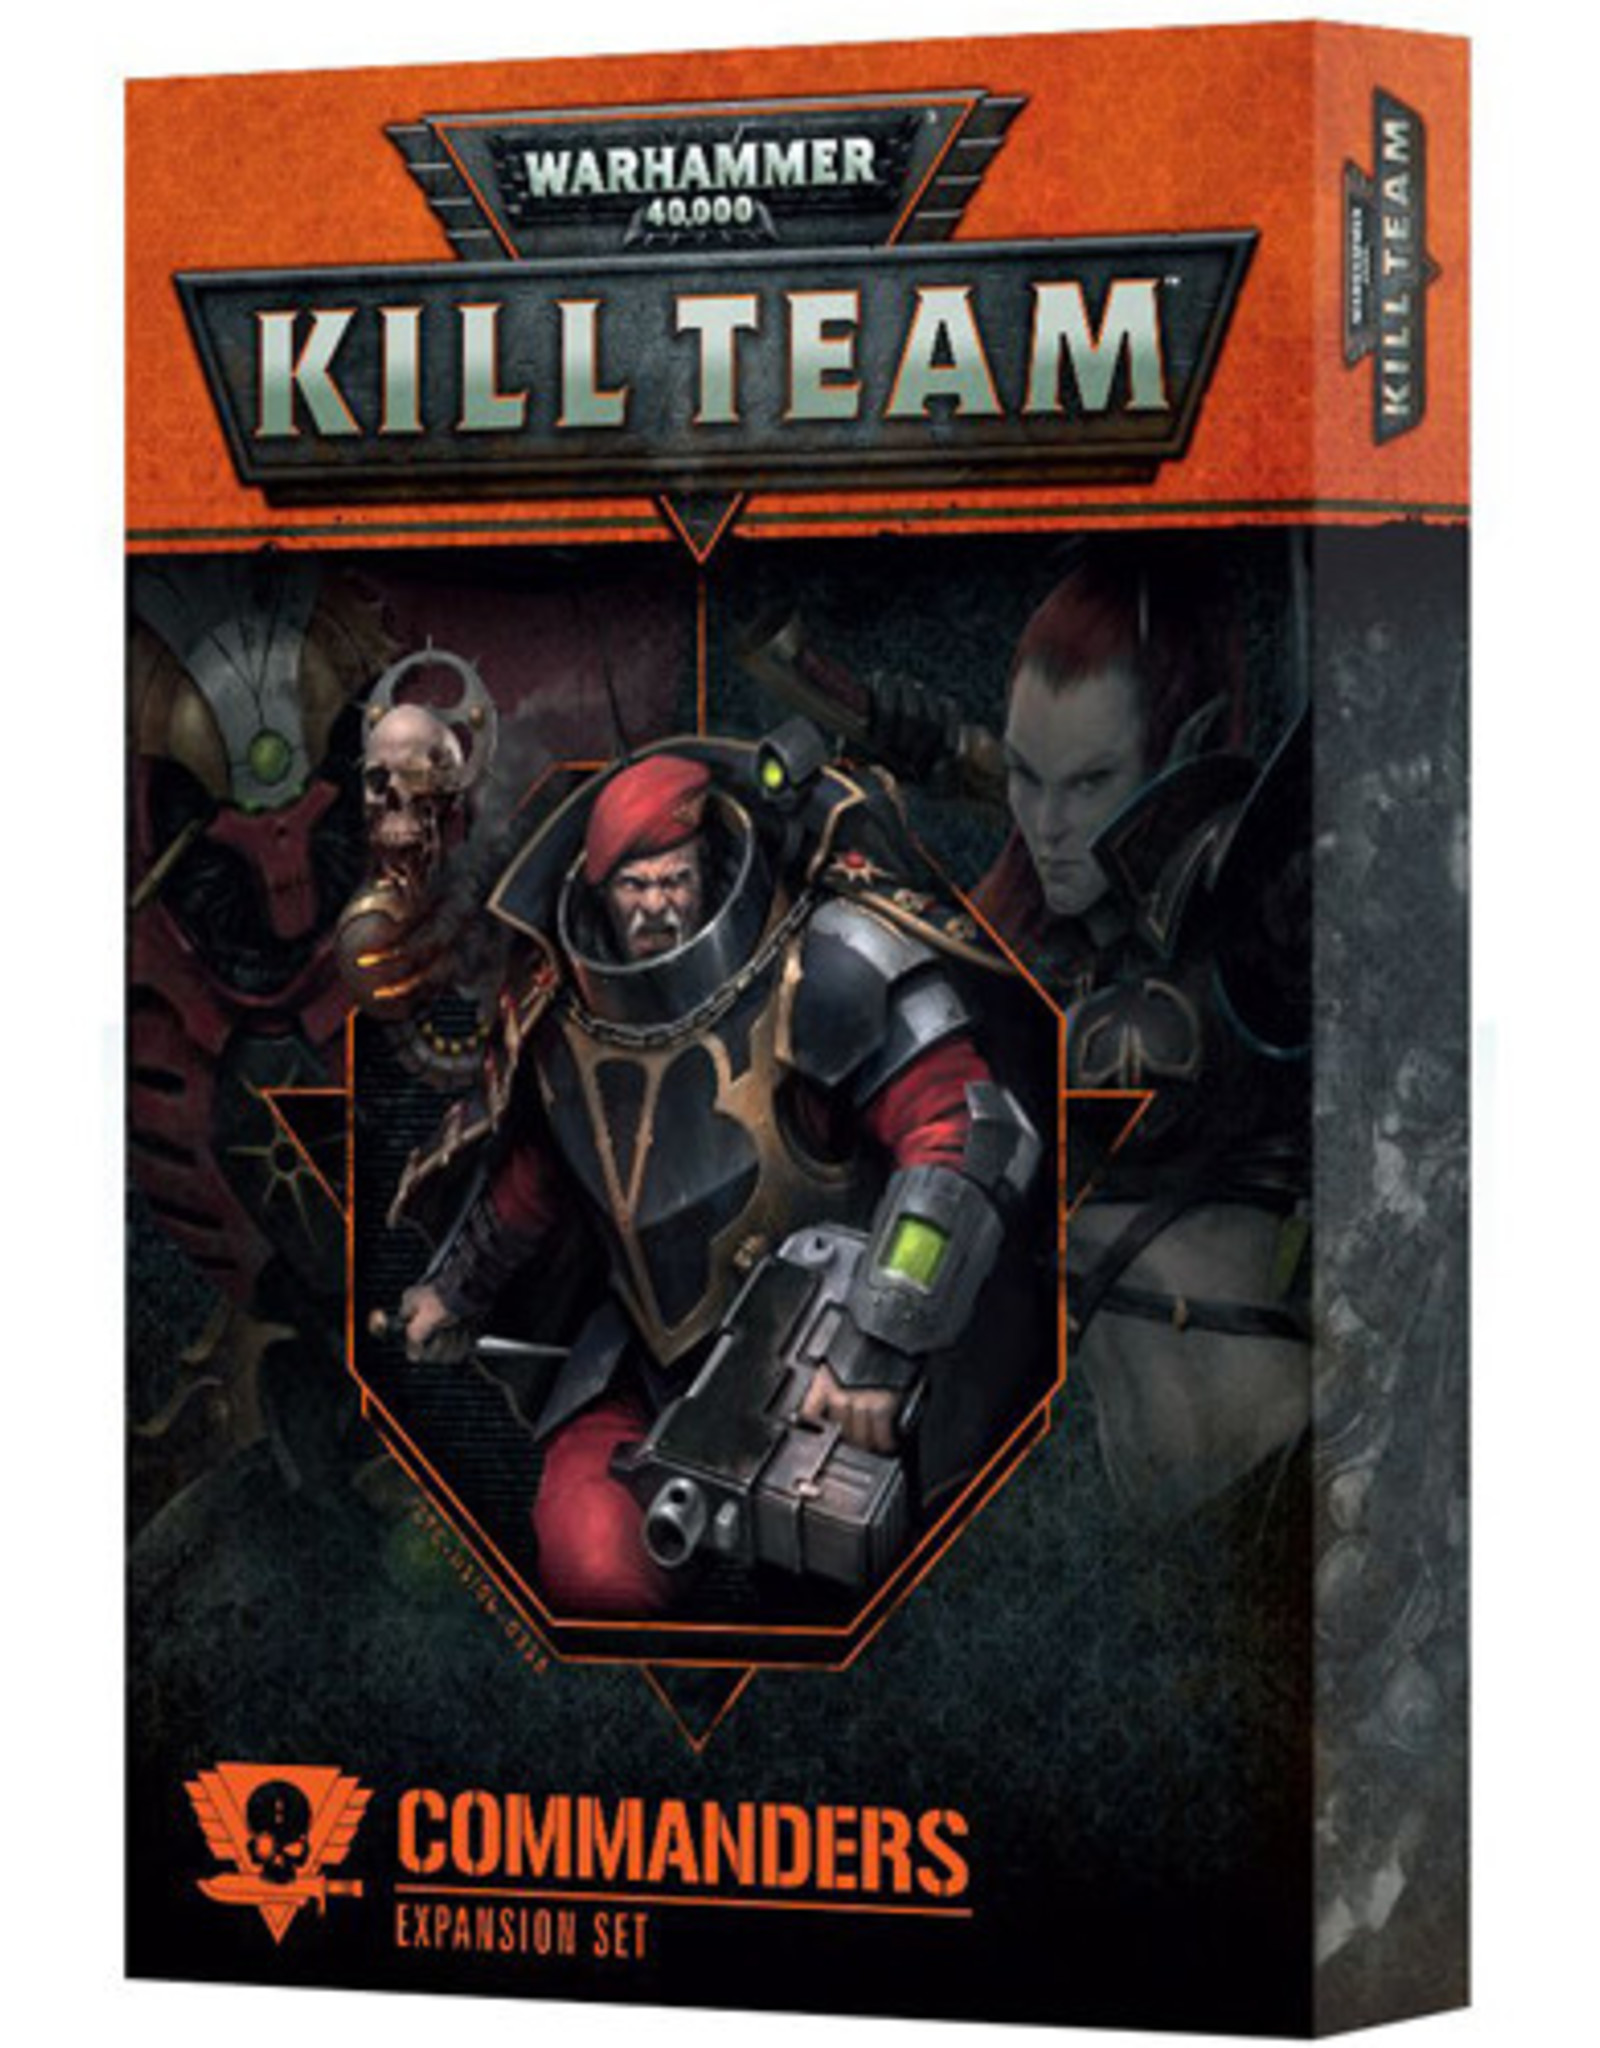 Games Workshop Warhammer 40K: Kill Team Commanders Expansion Set #120-44-60